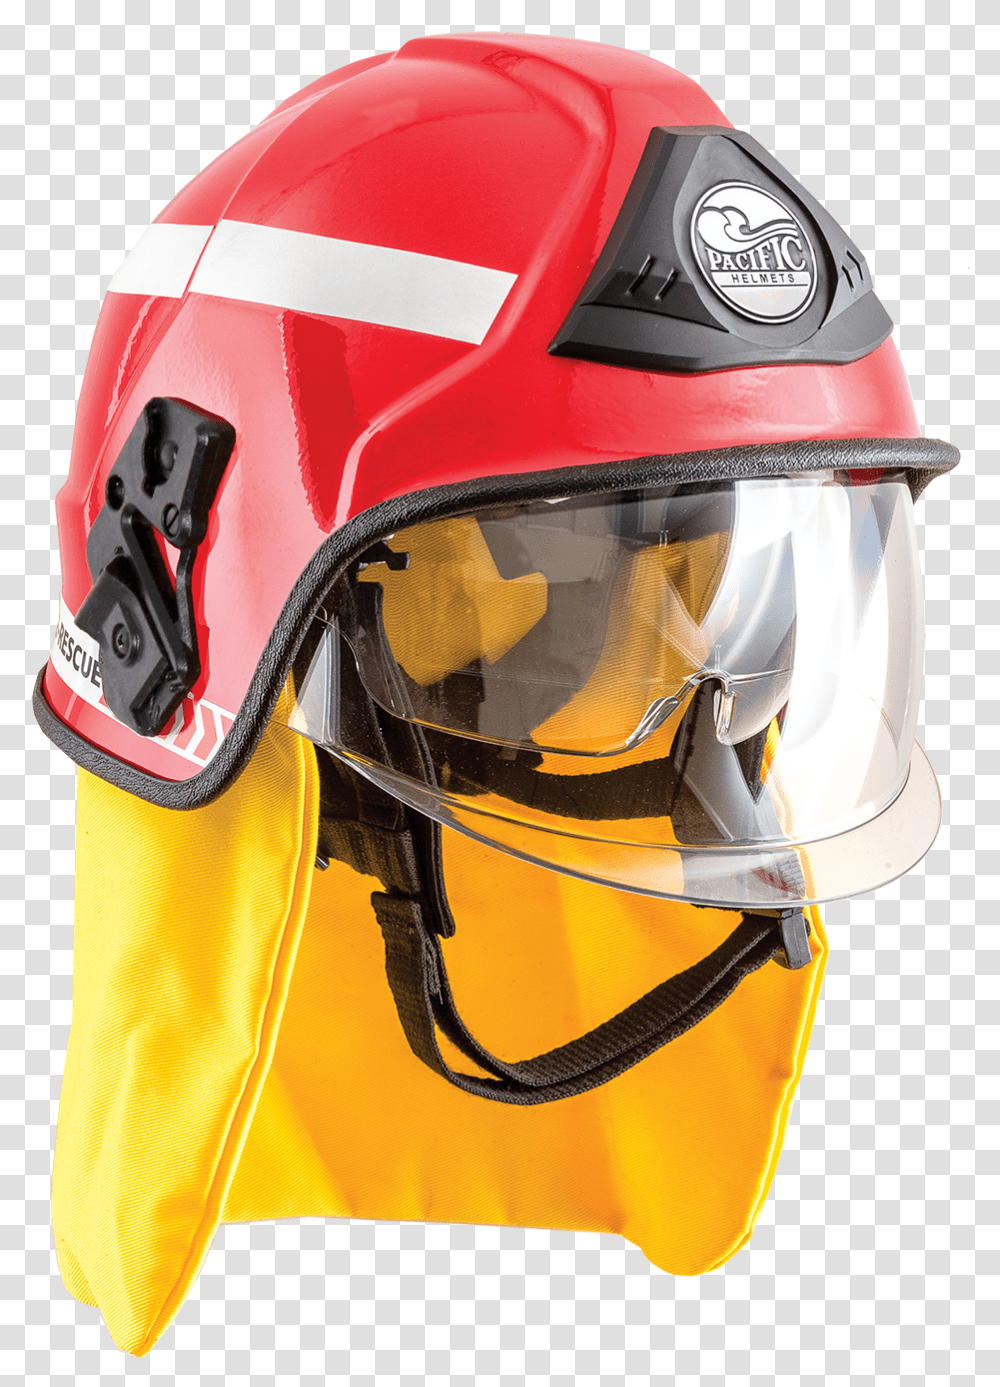 Fire Hat Clipart Pacific F15 Premium Jet Style Structural Helmet, Apparel, Crash Helmet, Hardhat Transparent Png